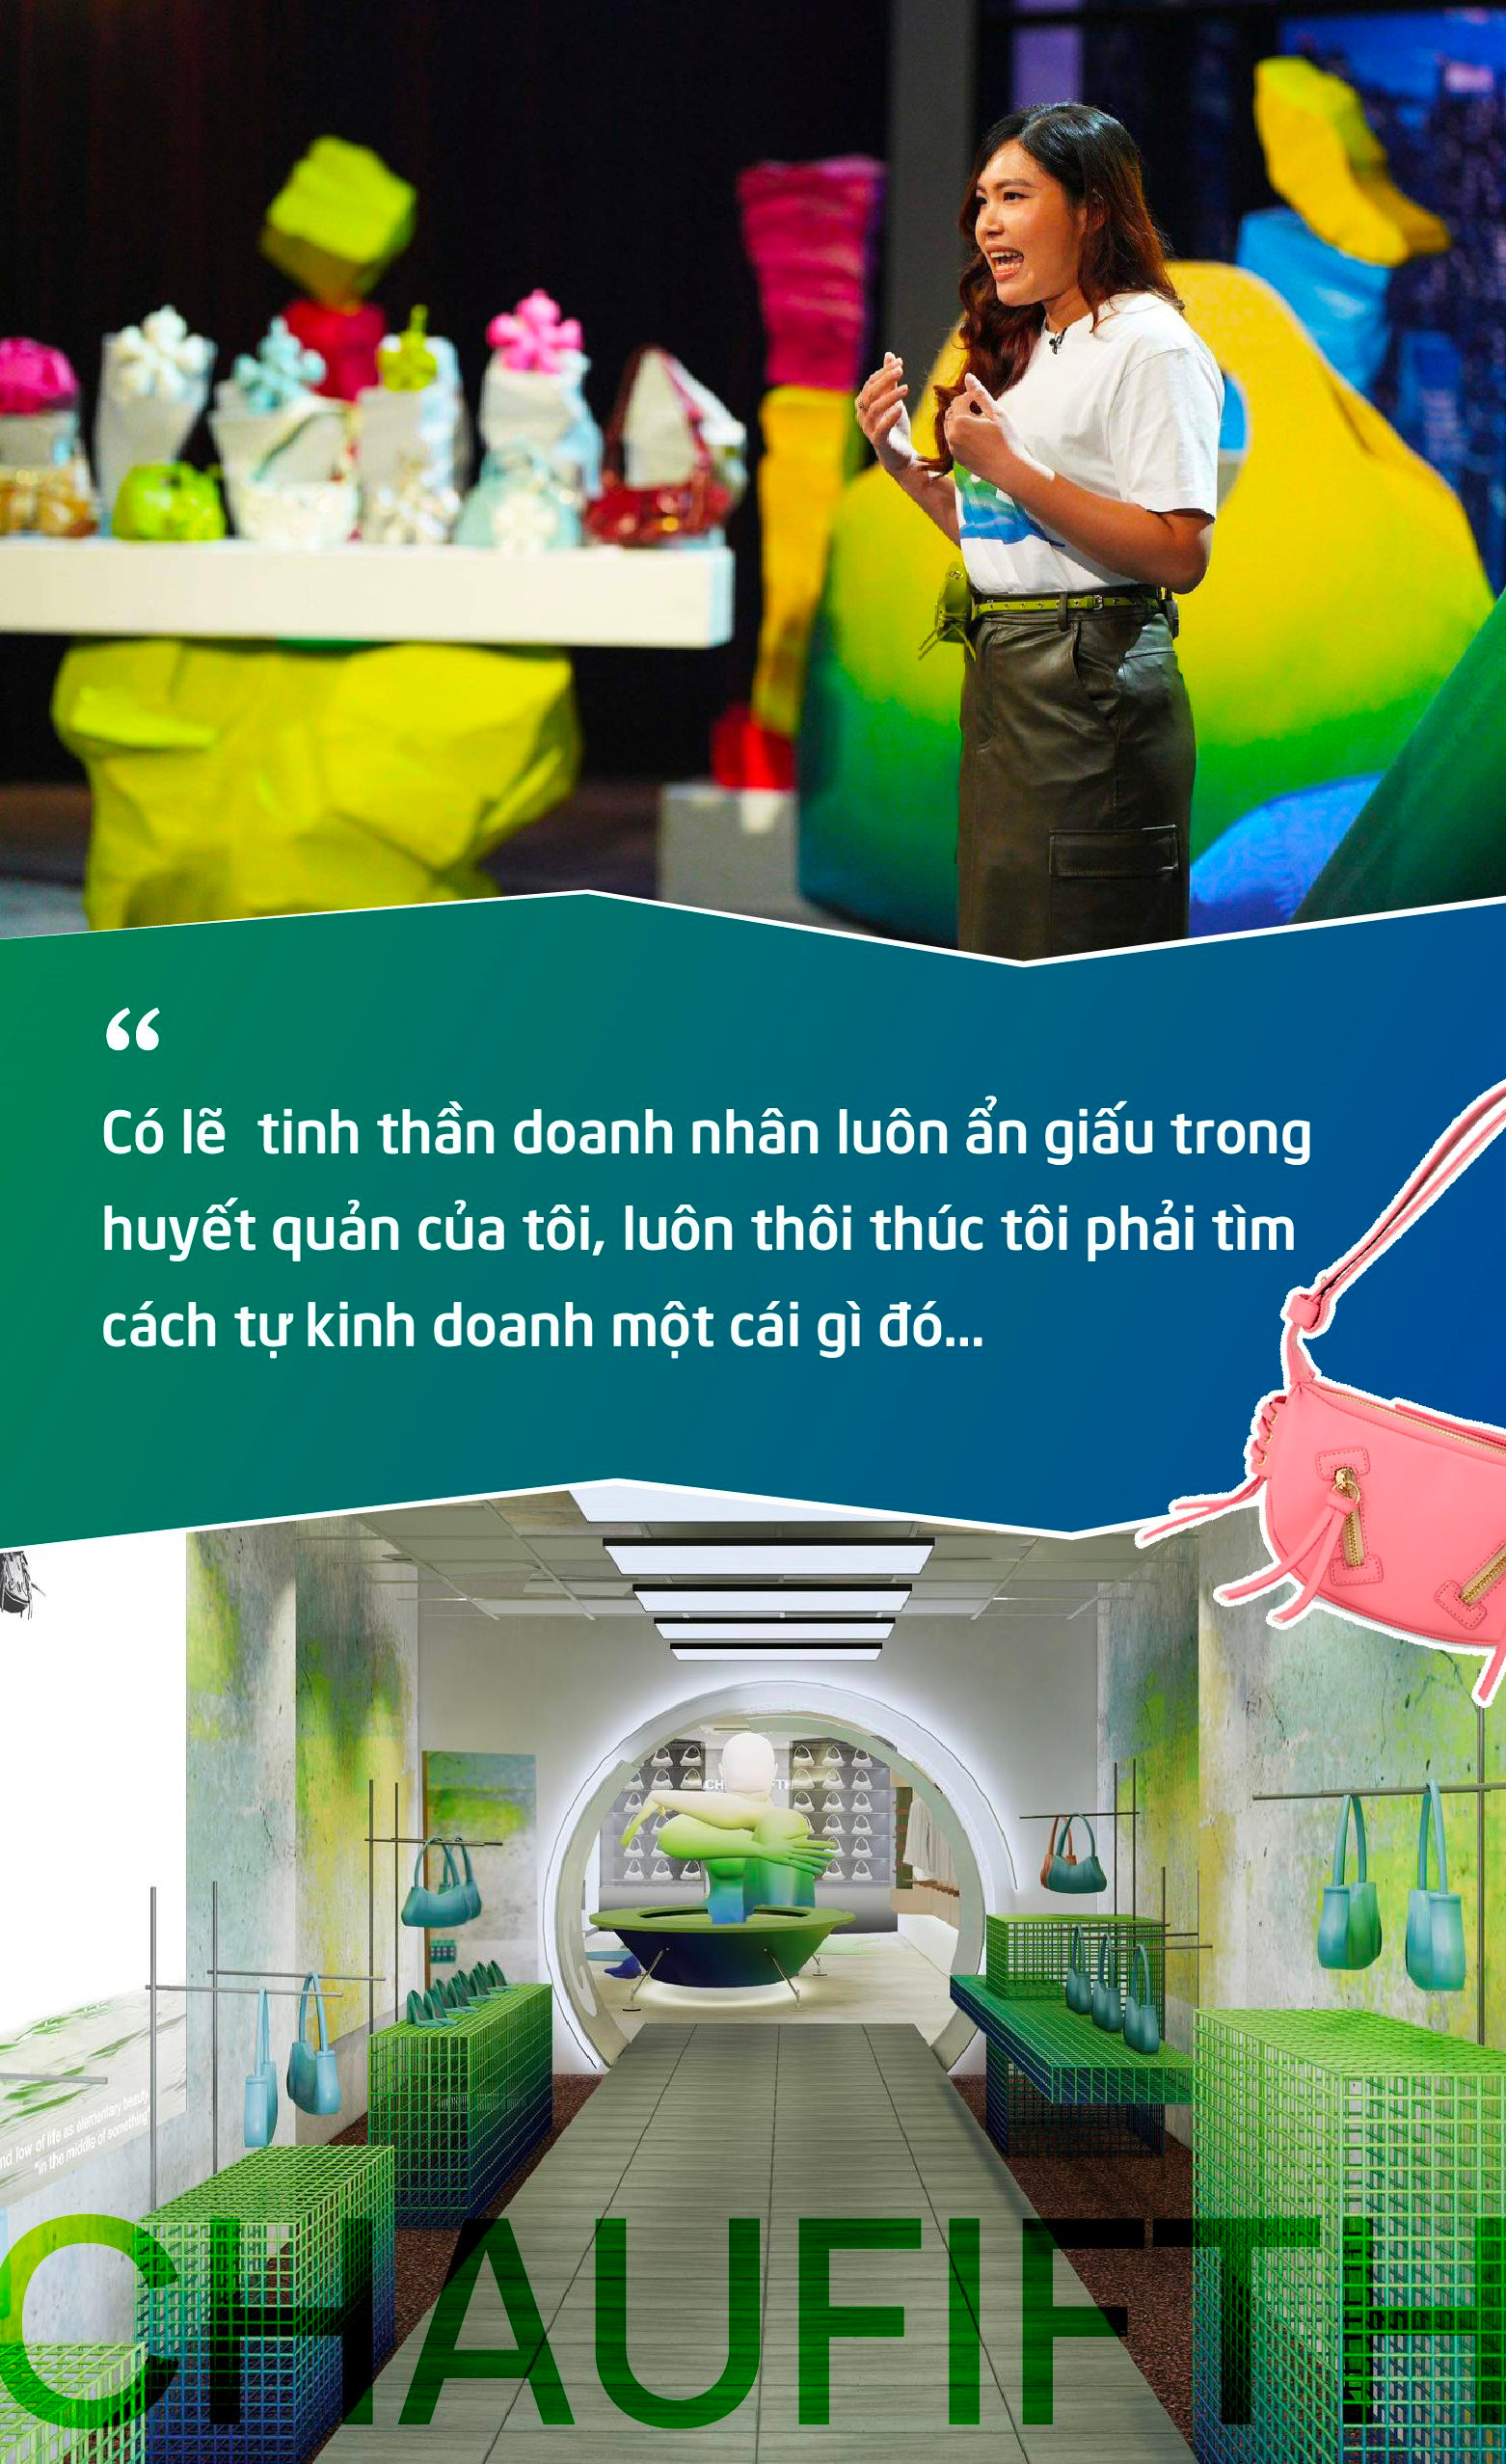 Nhân viên văn phòng 9x bỏ 3 triệu đồng đi học Photoshop, xây dựng thương hiệu túi xách CHAUTFIFTH được định giá 104 tỷ đồng trên Shark Tank Việt Nam - Ảnh 2.